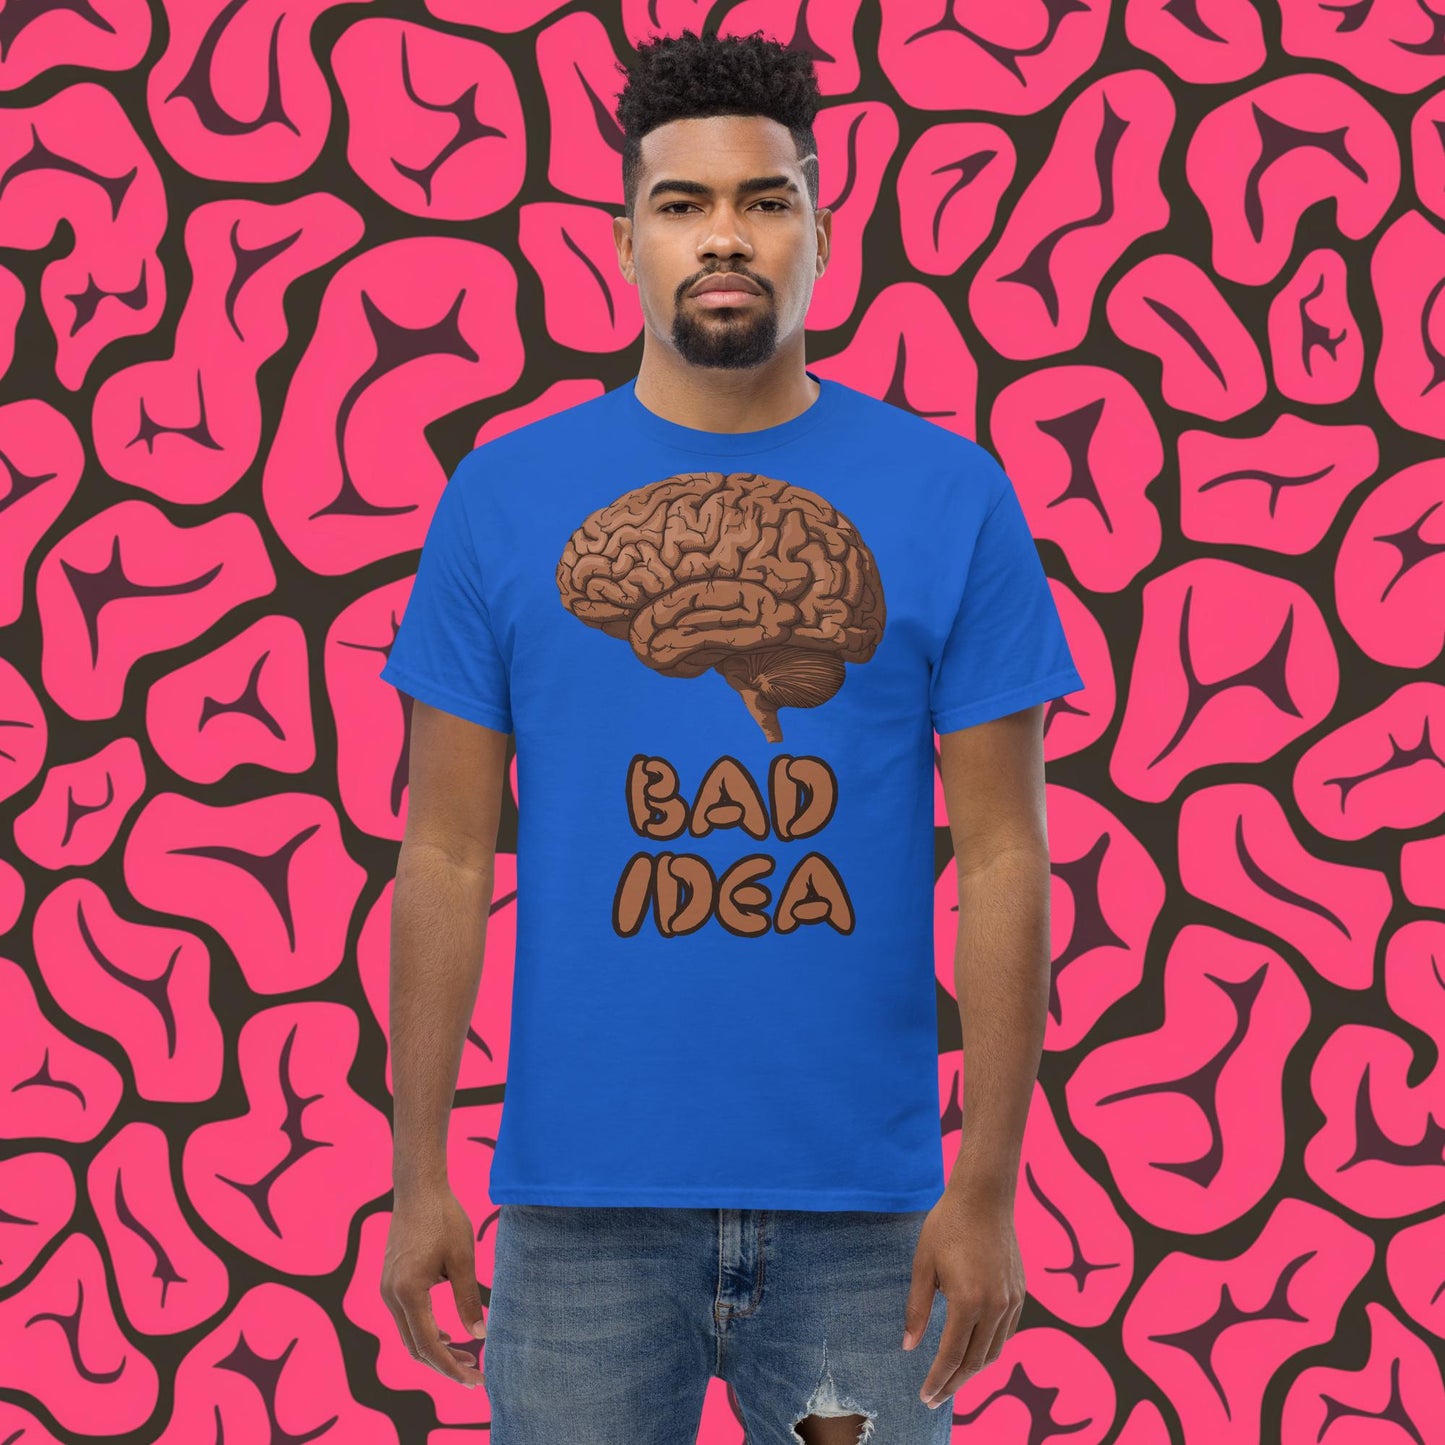 Bad Idea Shit Idea Brown Brains tee Next Cult Brand